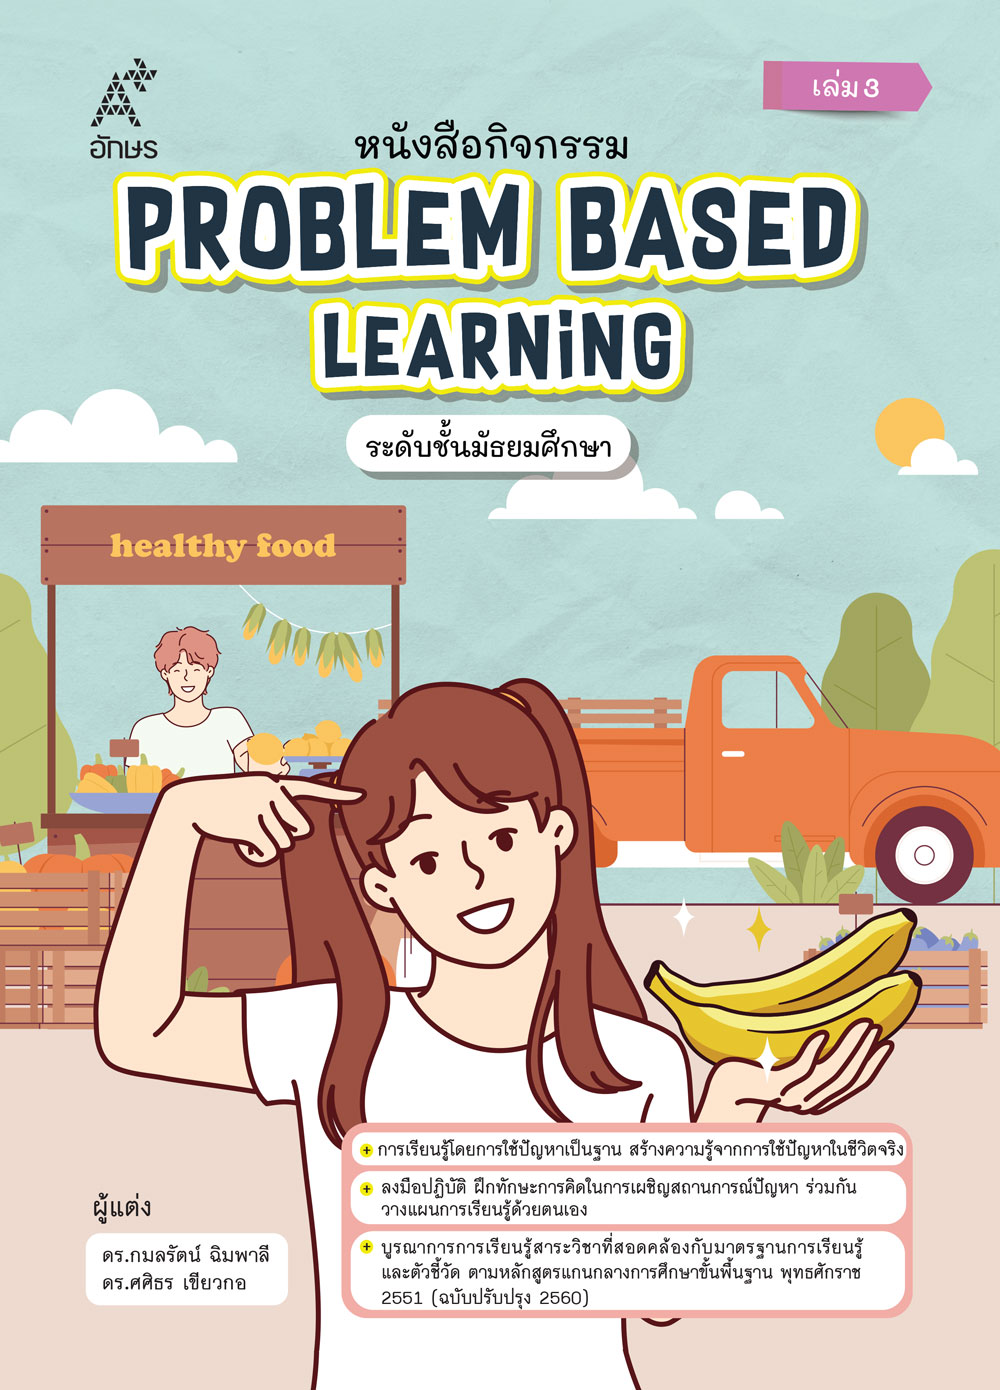 หนังสือกิจกรรม Problem Based Learning ระดับชั้นมัธยมศึกษา เล่ม 3 (Coming soon)